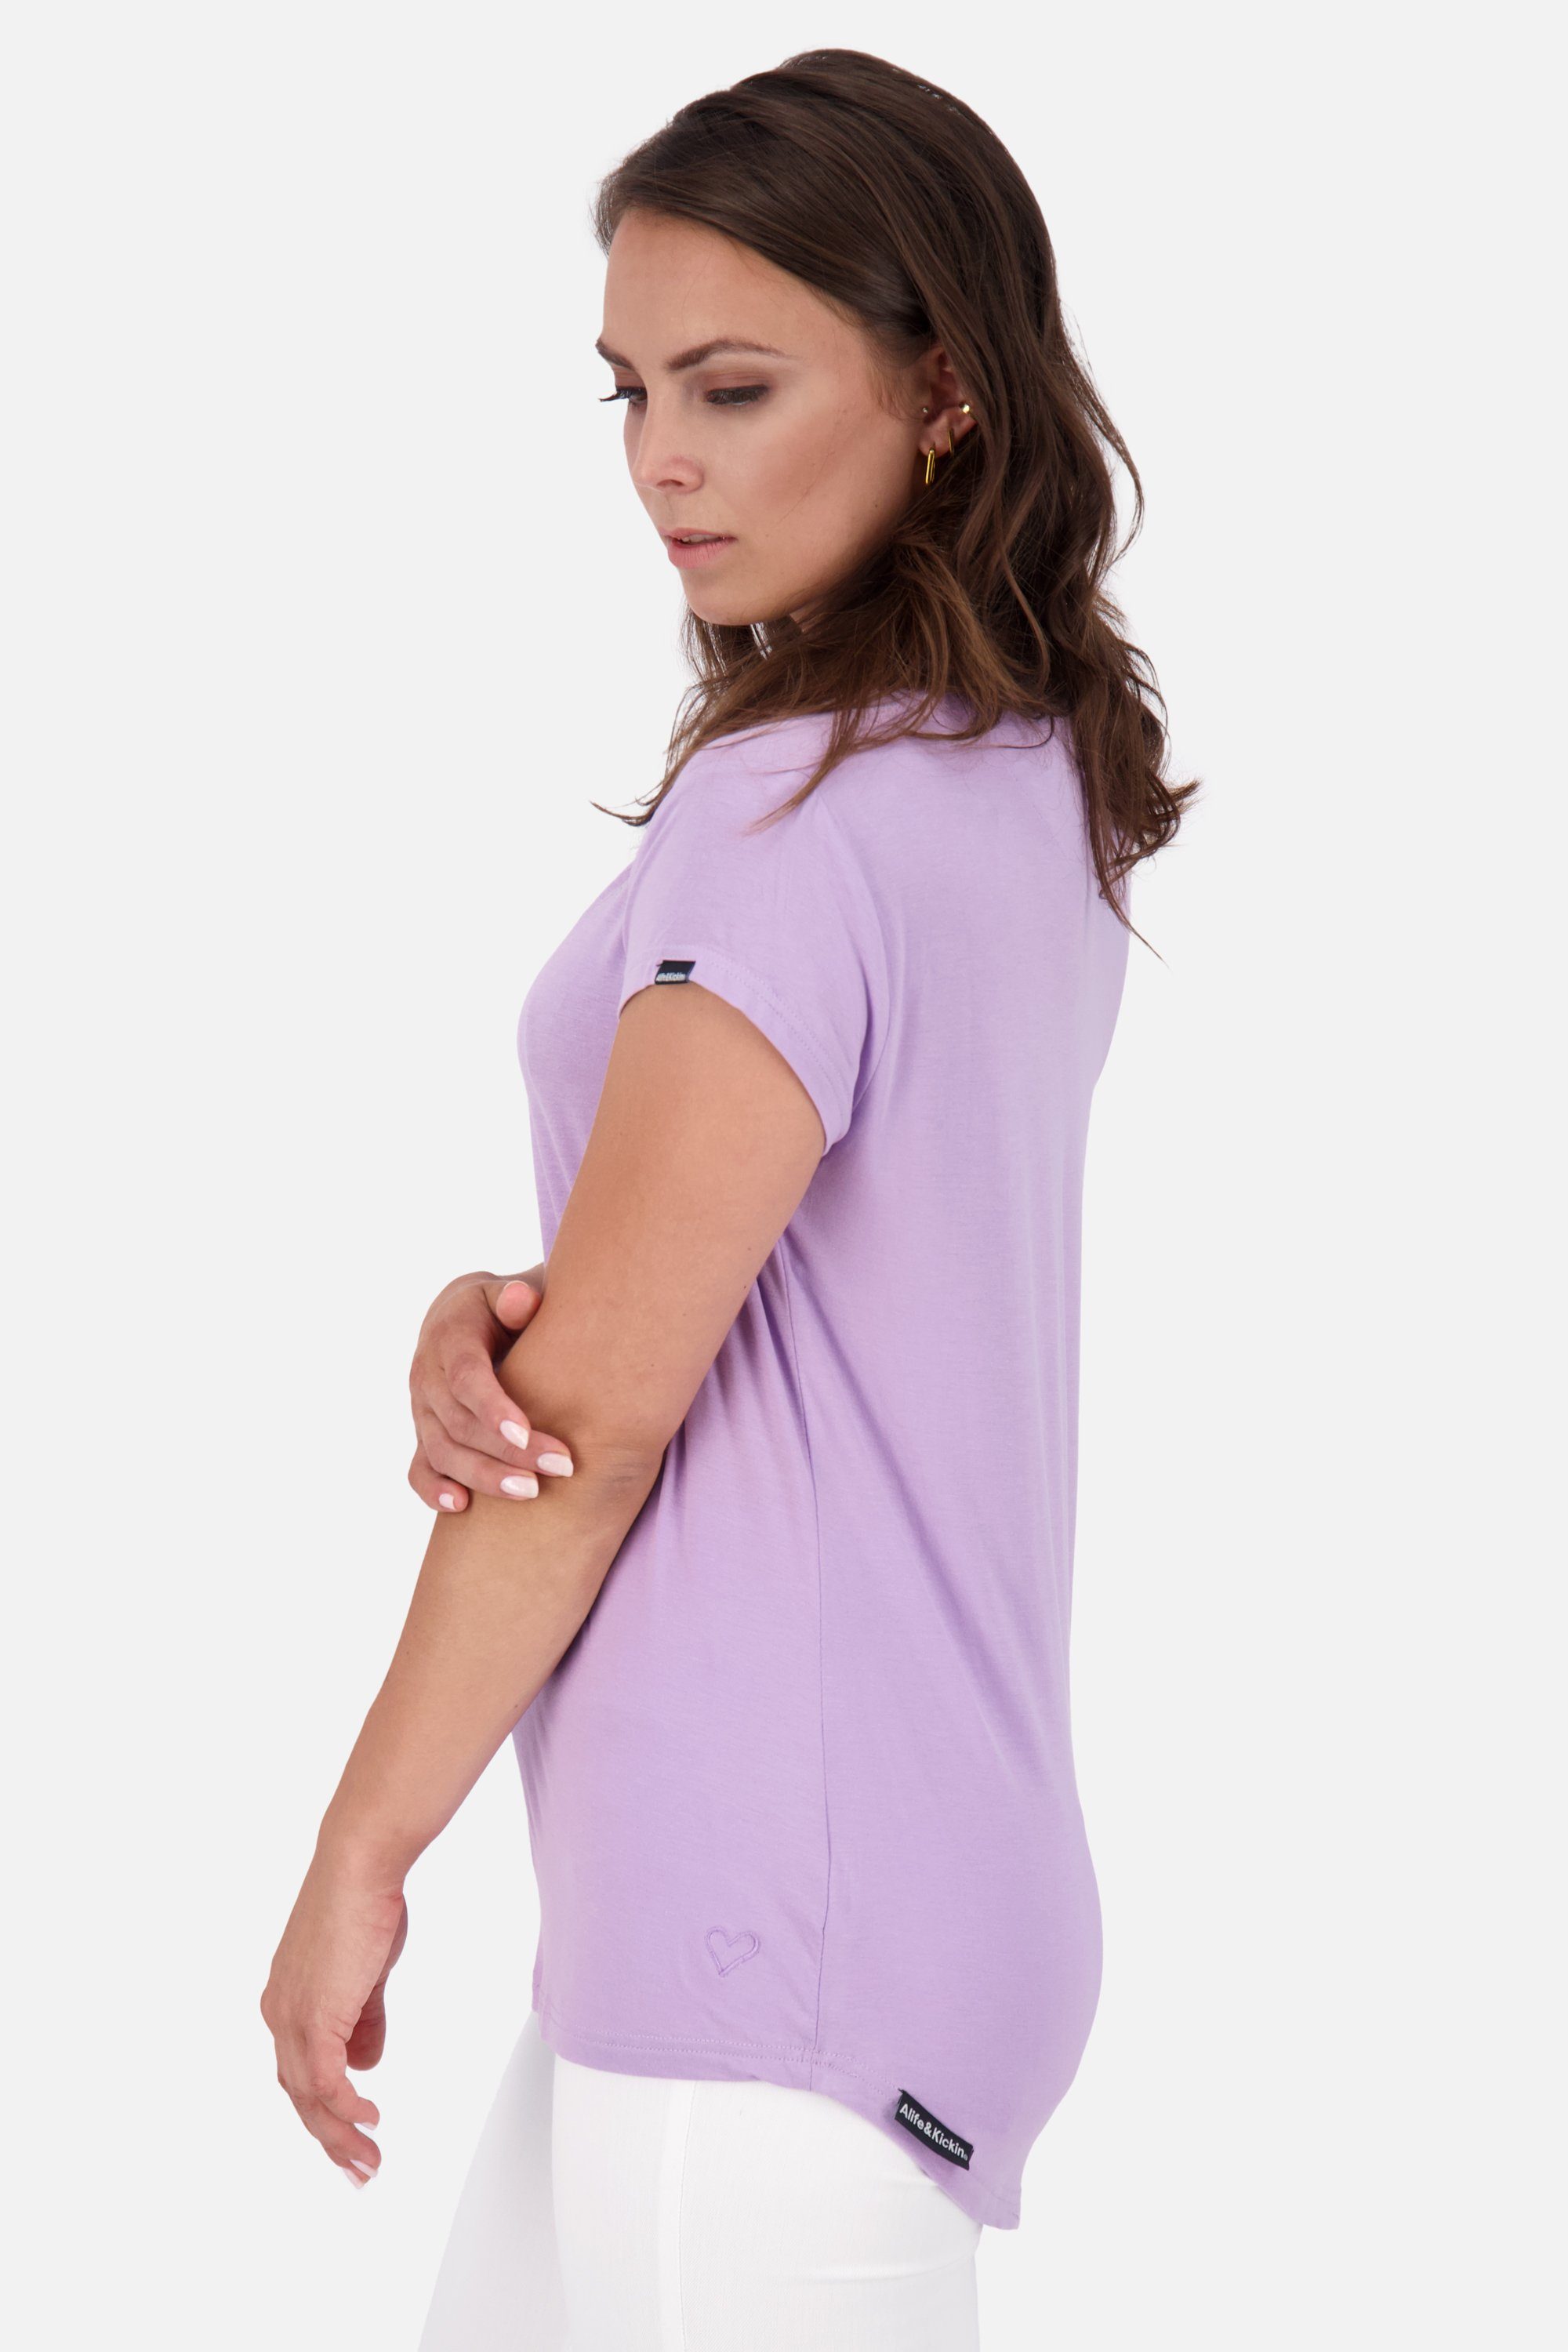 Kurzarmshirt, lavender Shirt A & MimmyAK Alife Damen Rundhalsshirt digital Shirt Kickin